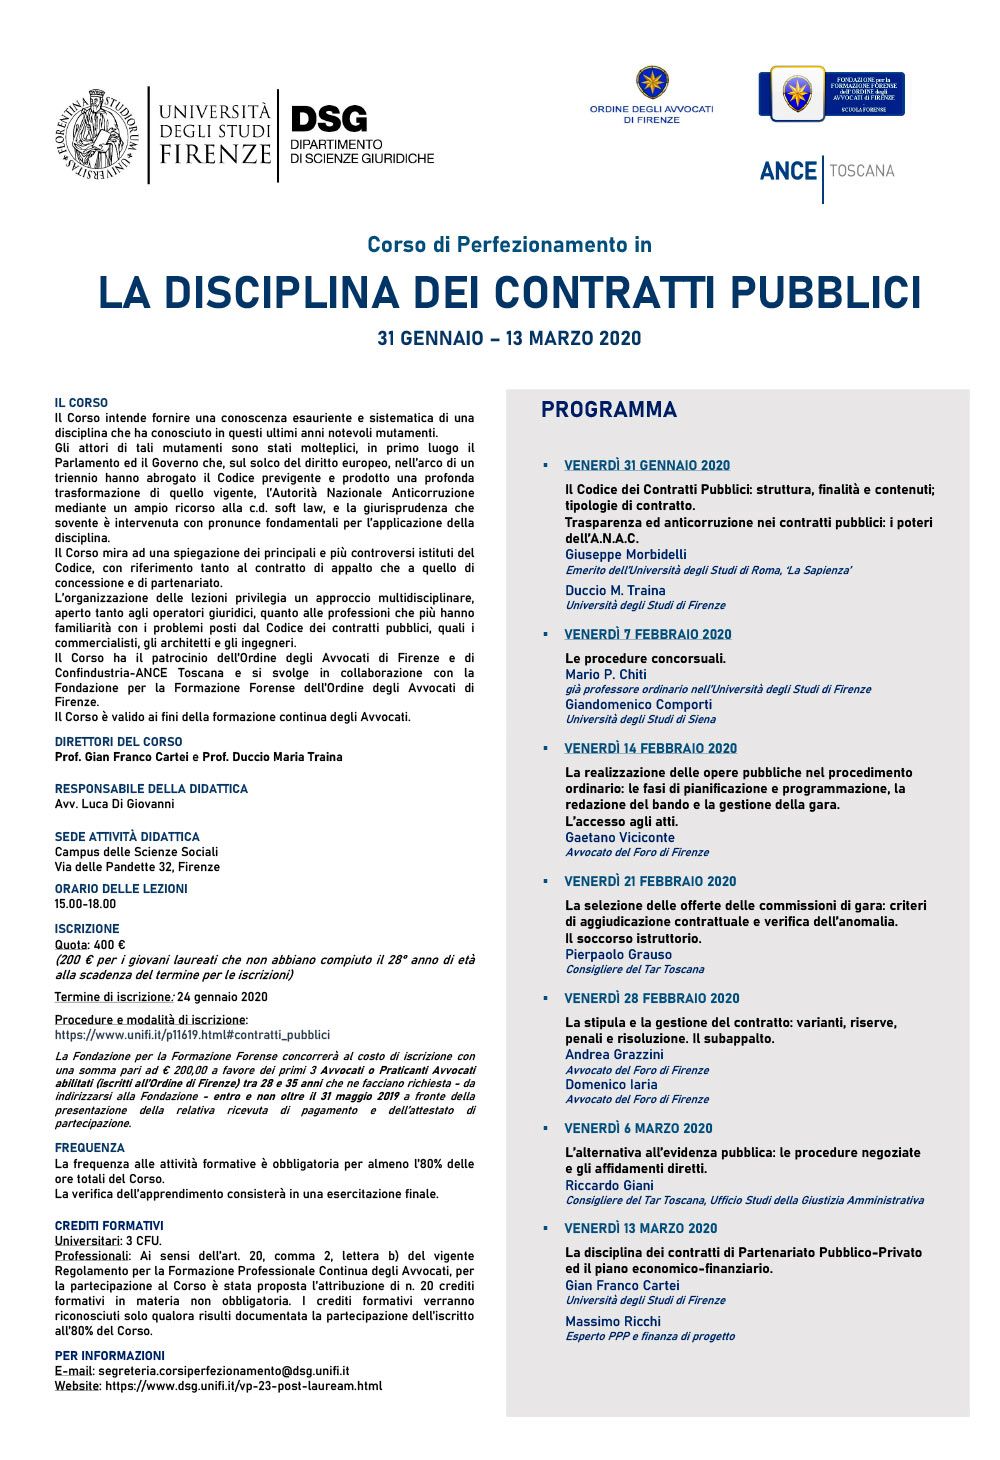 Locandina-la-disciplina-dei-contratti-pubblici-2020